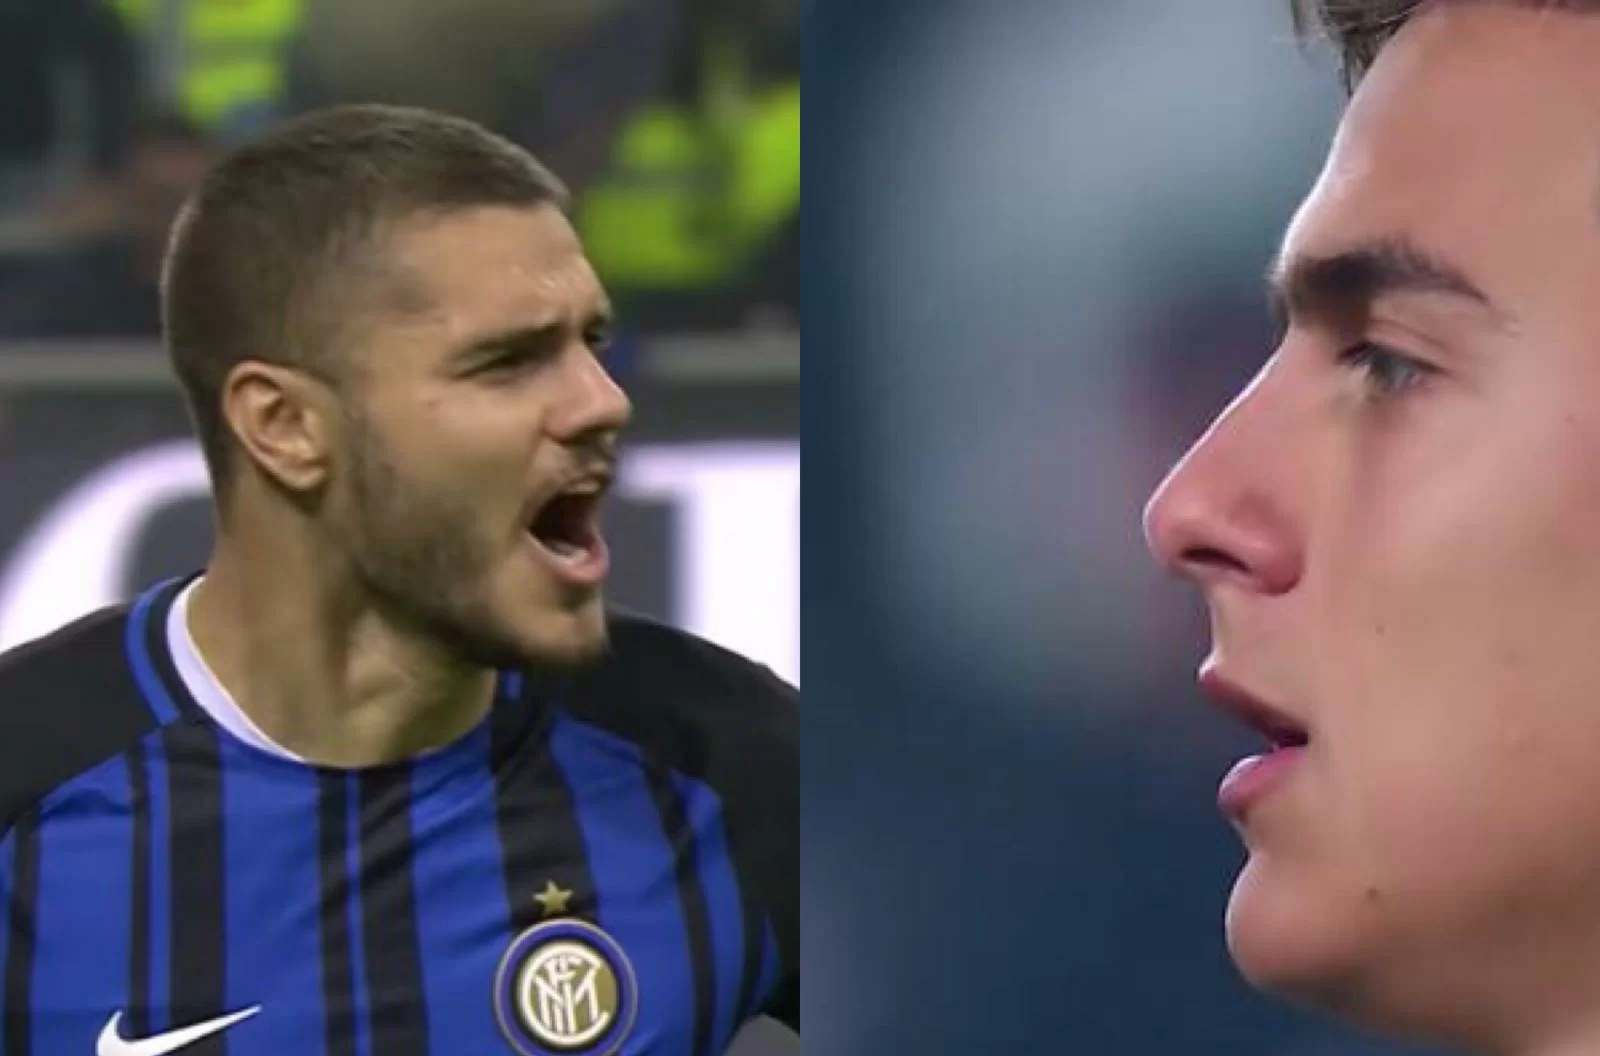 L’Inter bussa alla Juve: “Dybala per Icardi”. La soluzione accontenta tutti: tre super-nomi per il dopo-Icardi